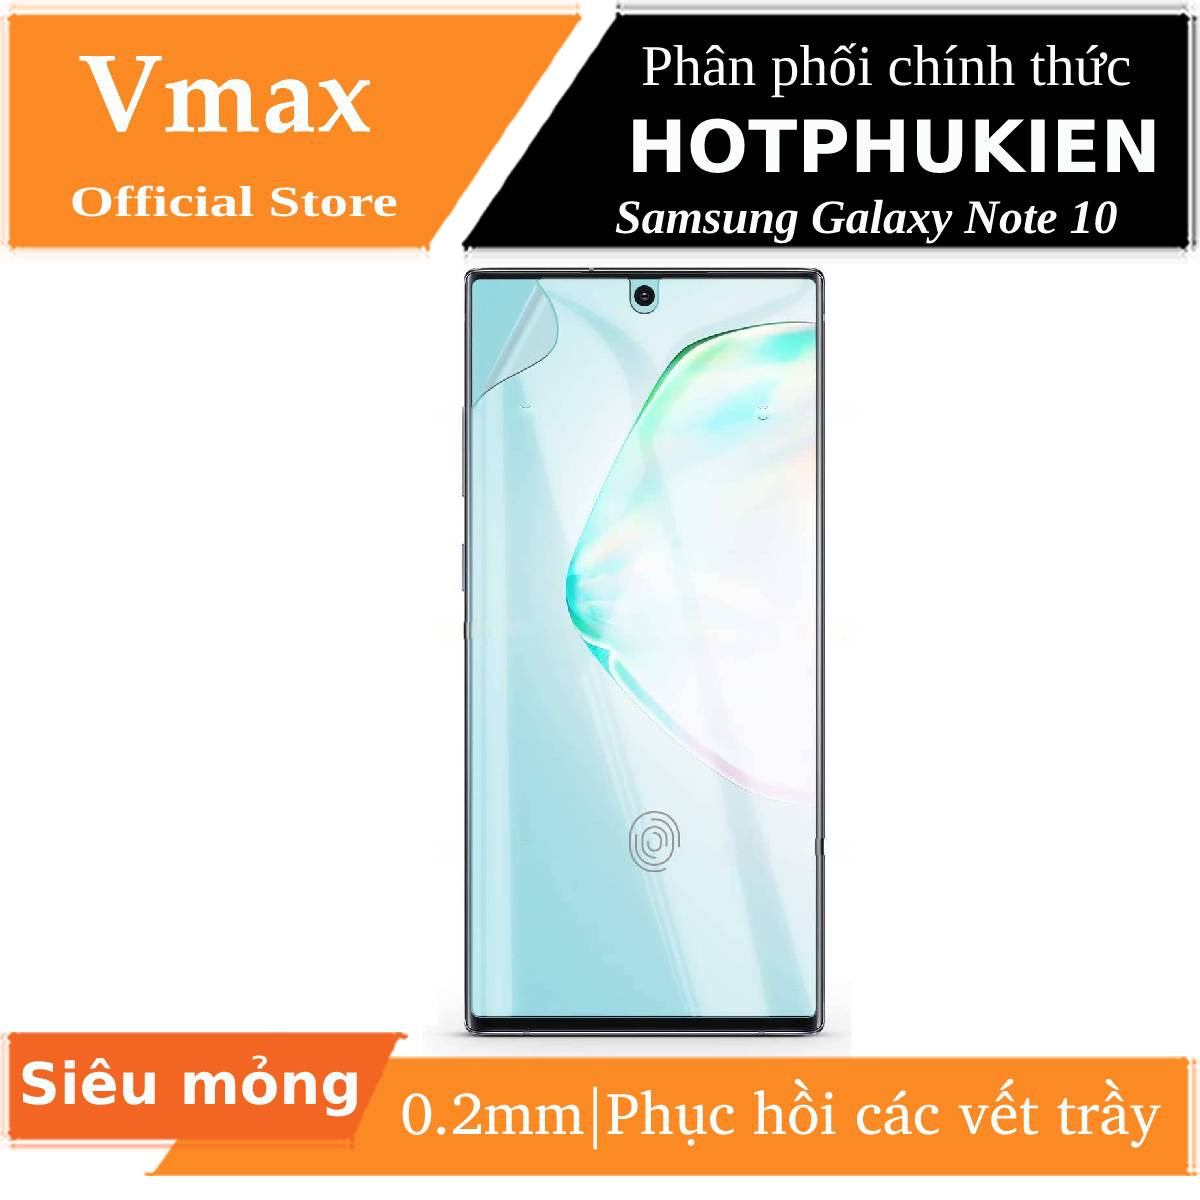 Miếng dán dẻo PPF chống trầy màn hình cho Samsung Galaxy Note 10 / Note 10 5G hiệu Vmax